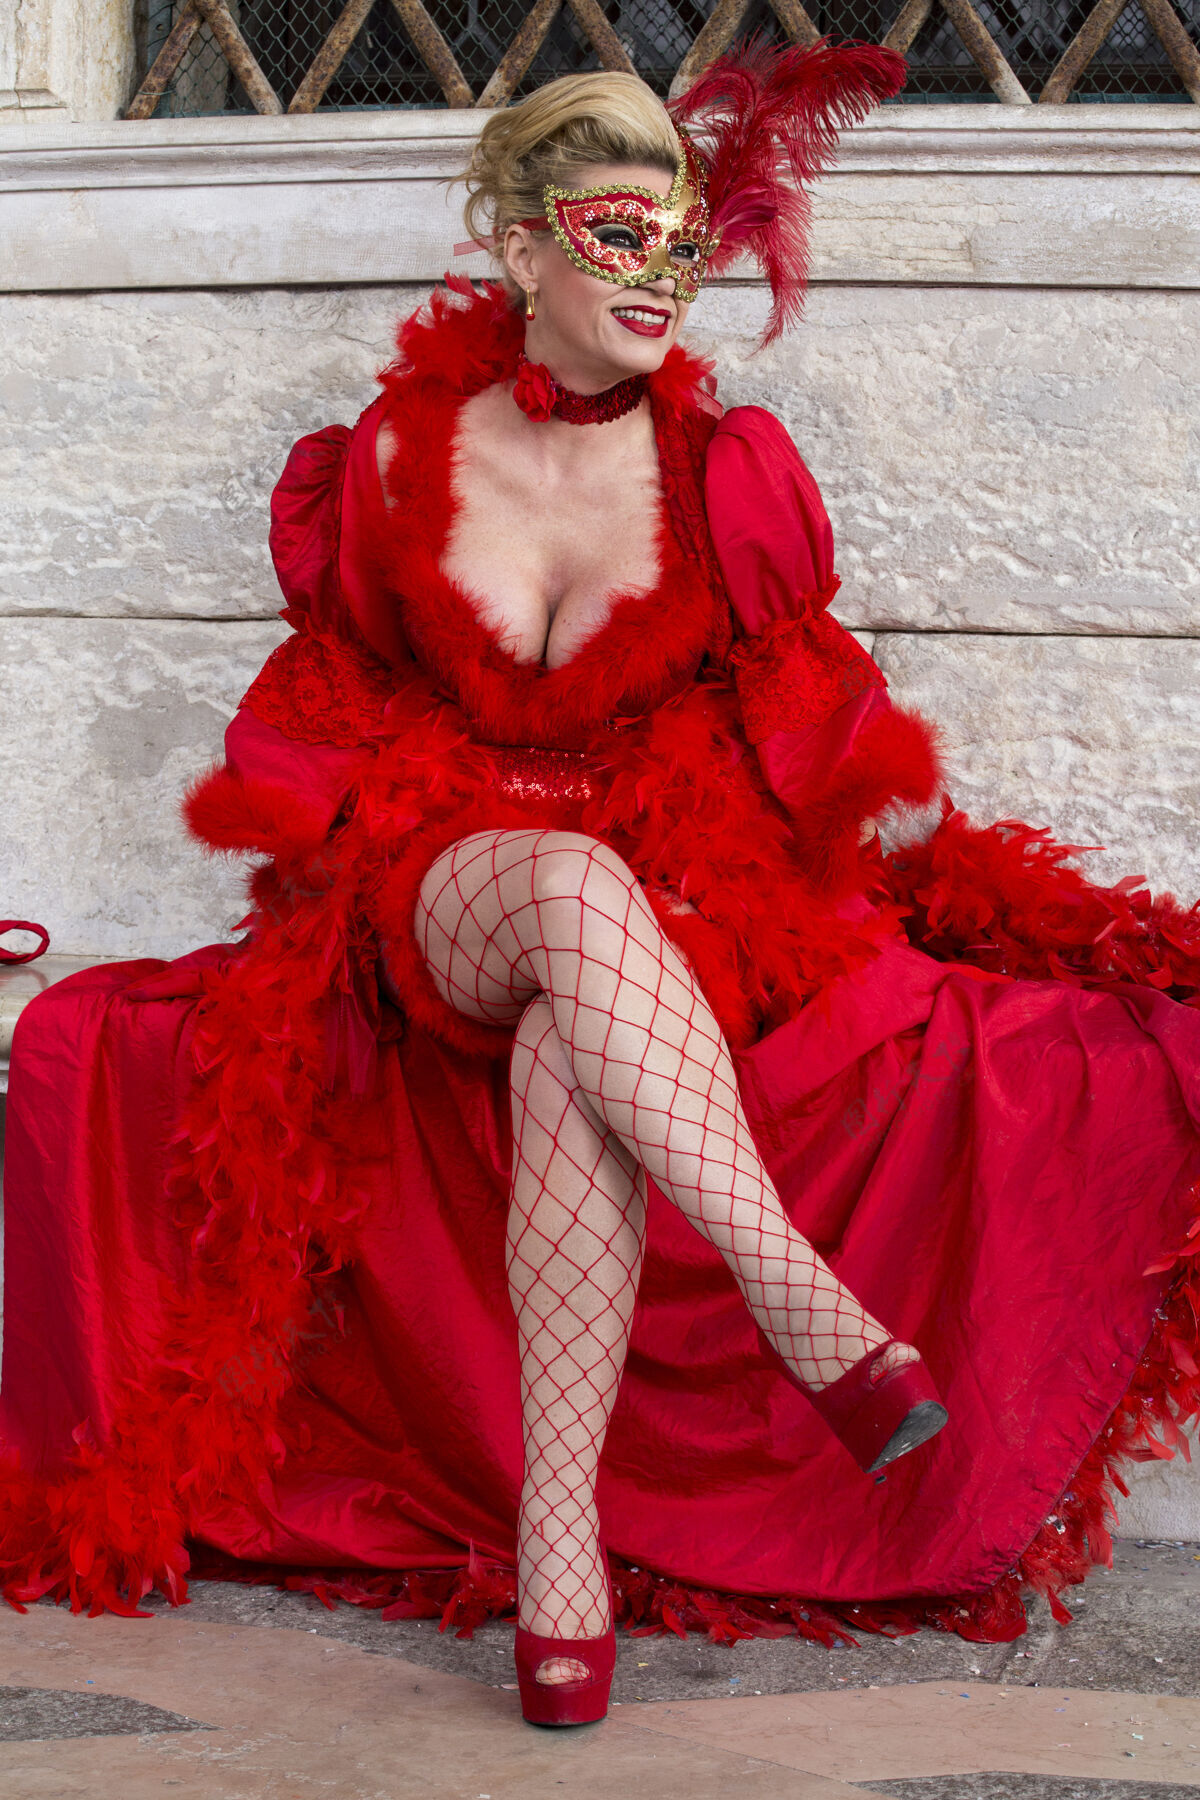 威尼斯在举世闻名的嘉年华期间 身着美丽礼服和传统威尼斯面具的女性威尼斯人节日娱乐